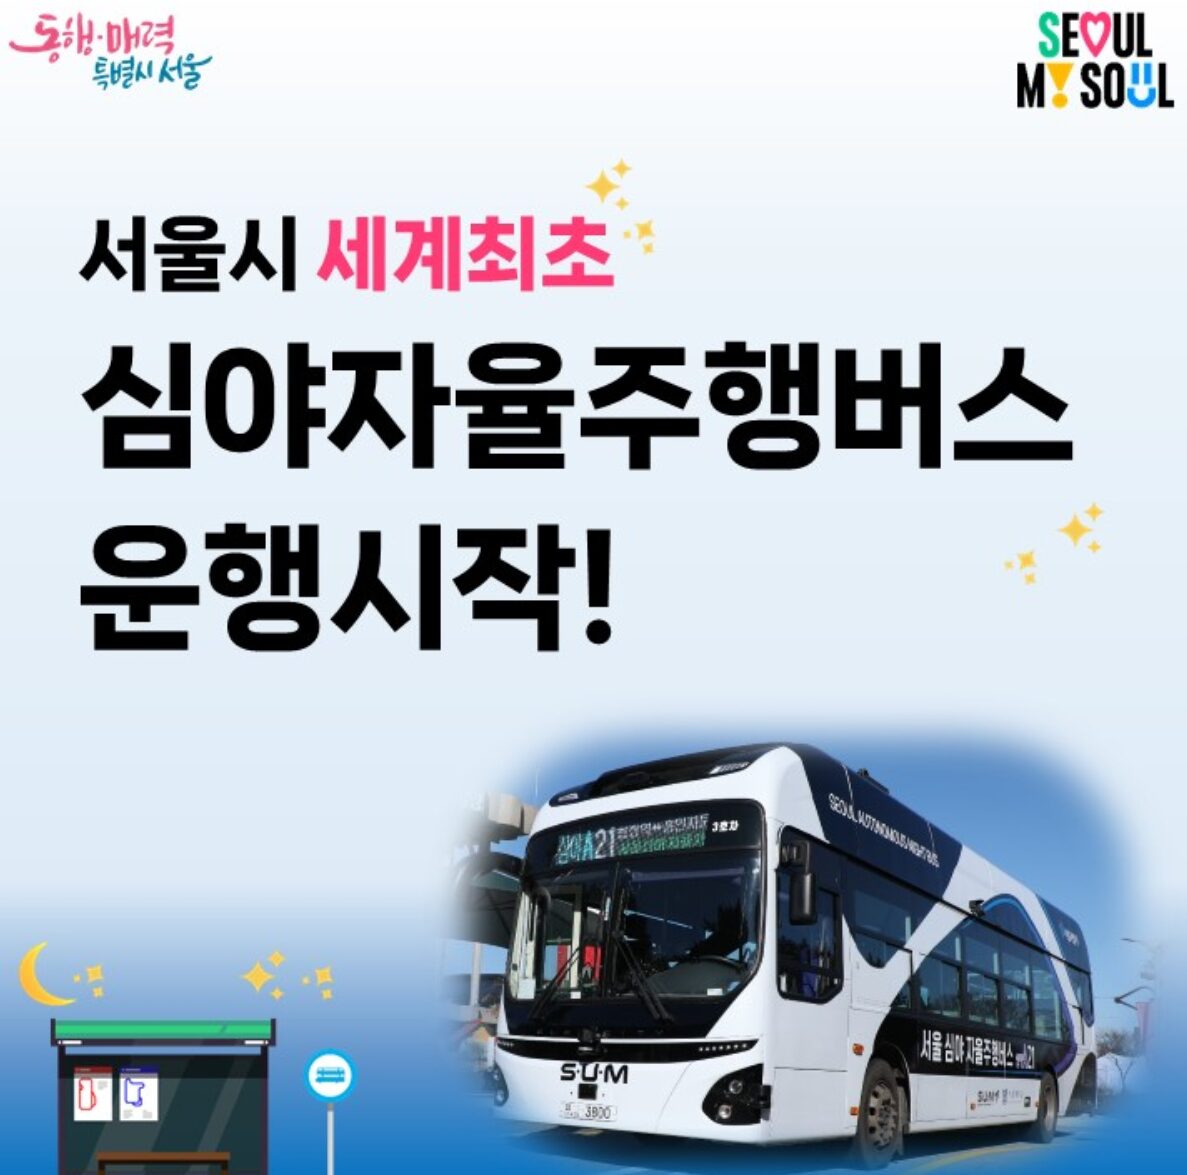 서울 심야자율주행버스 운행정보 및 장단점